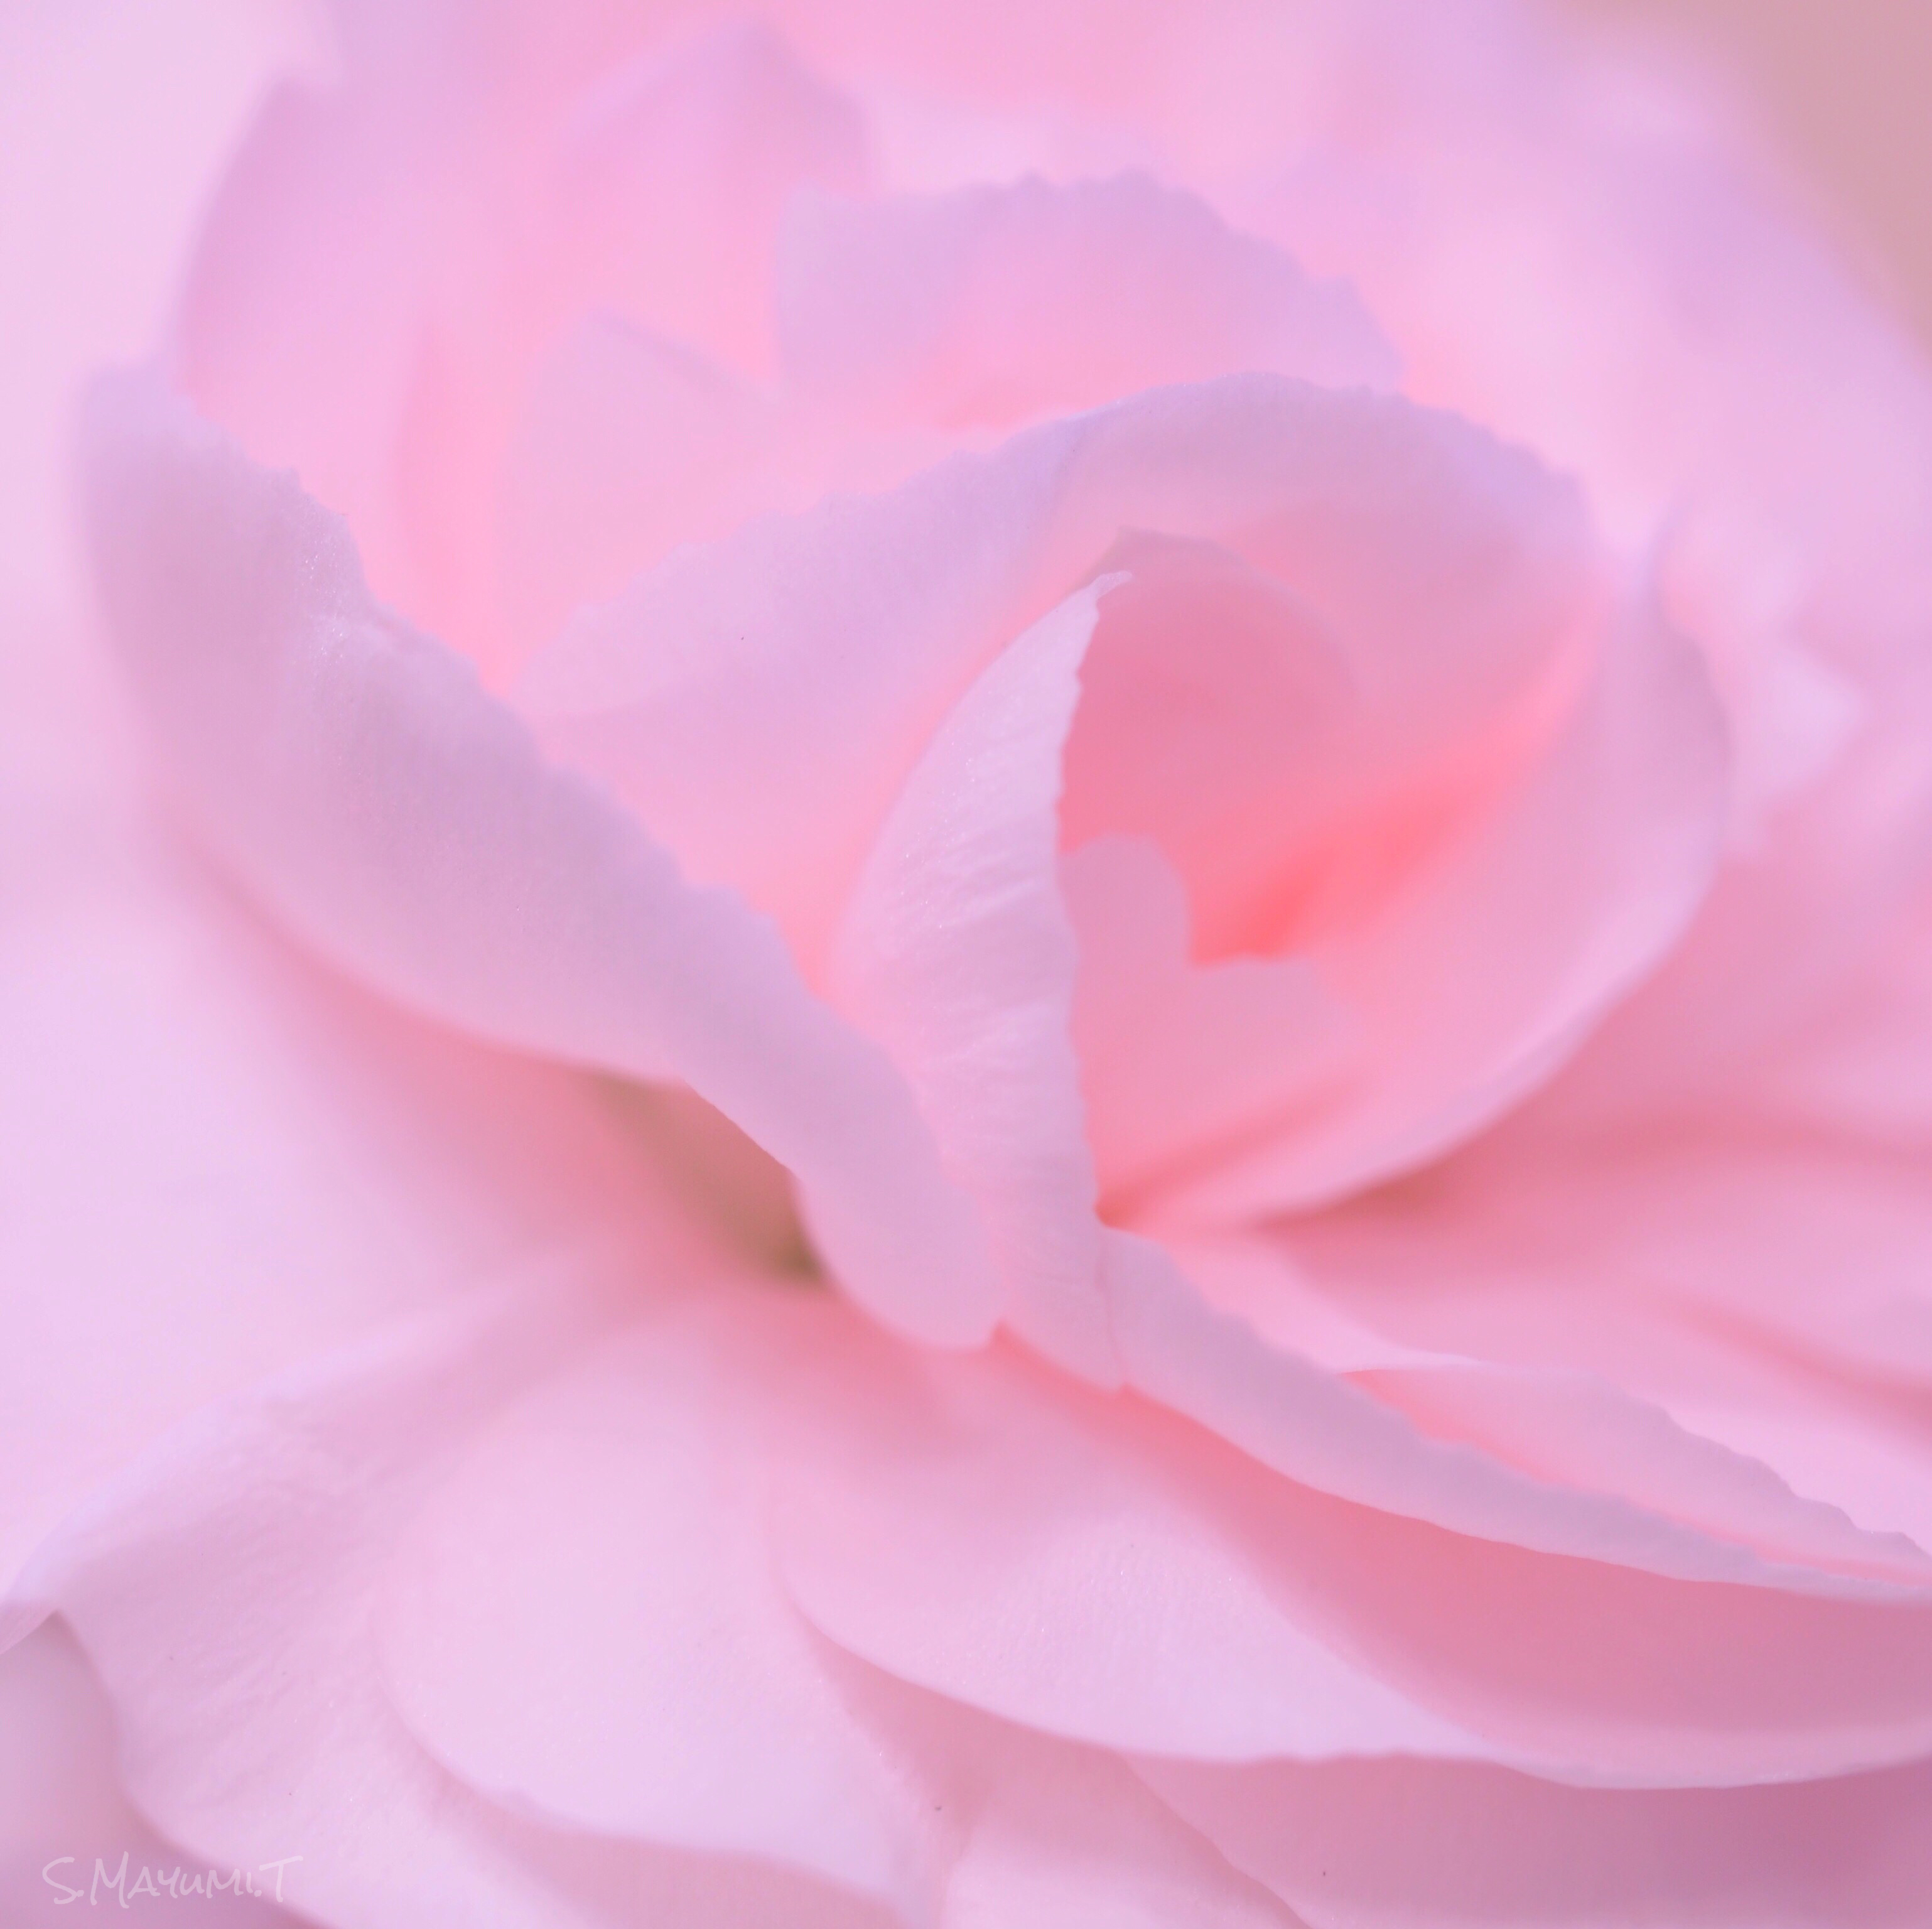 ふわふわ〜可愛いピンクのコスモス。